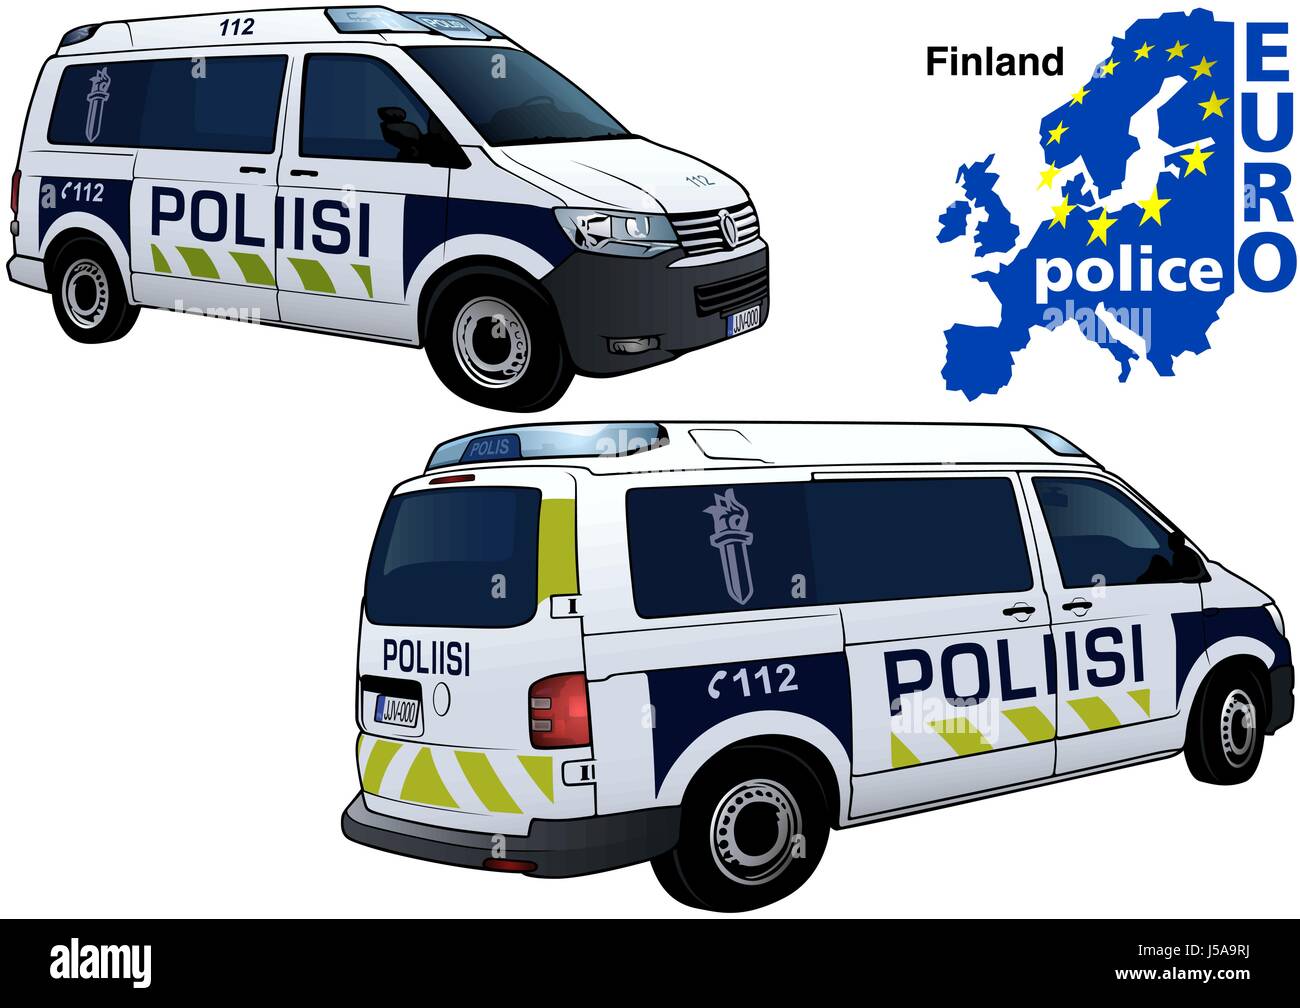 Finland Police Car Stock Vector